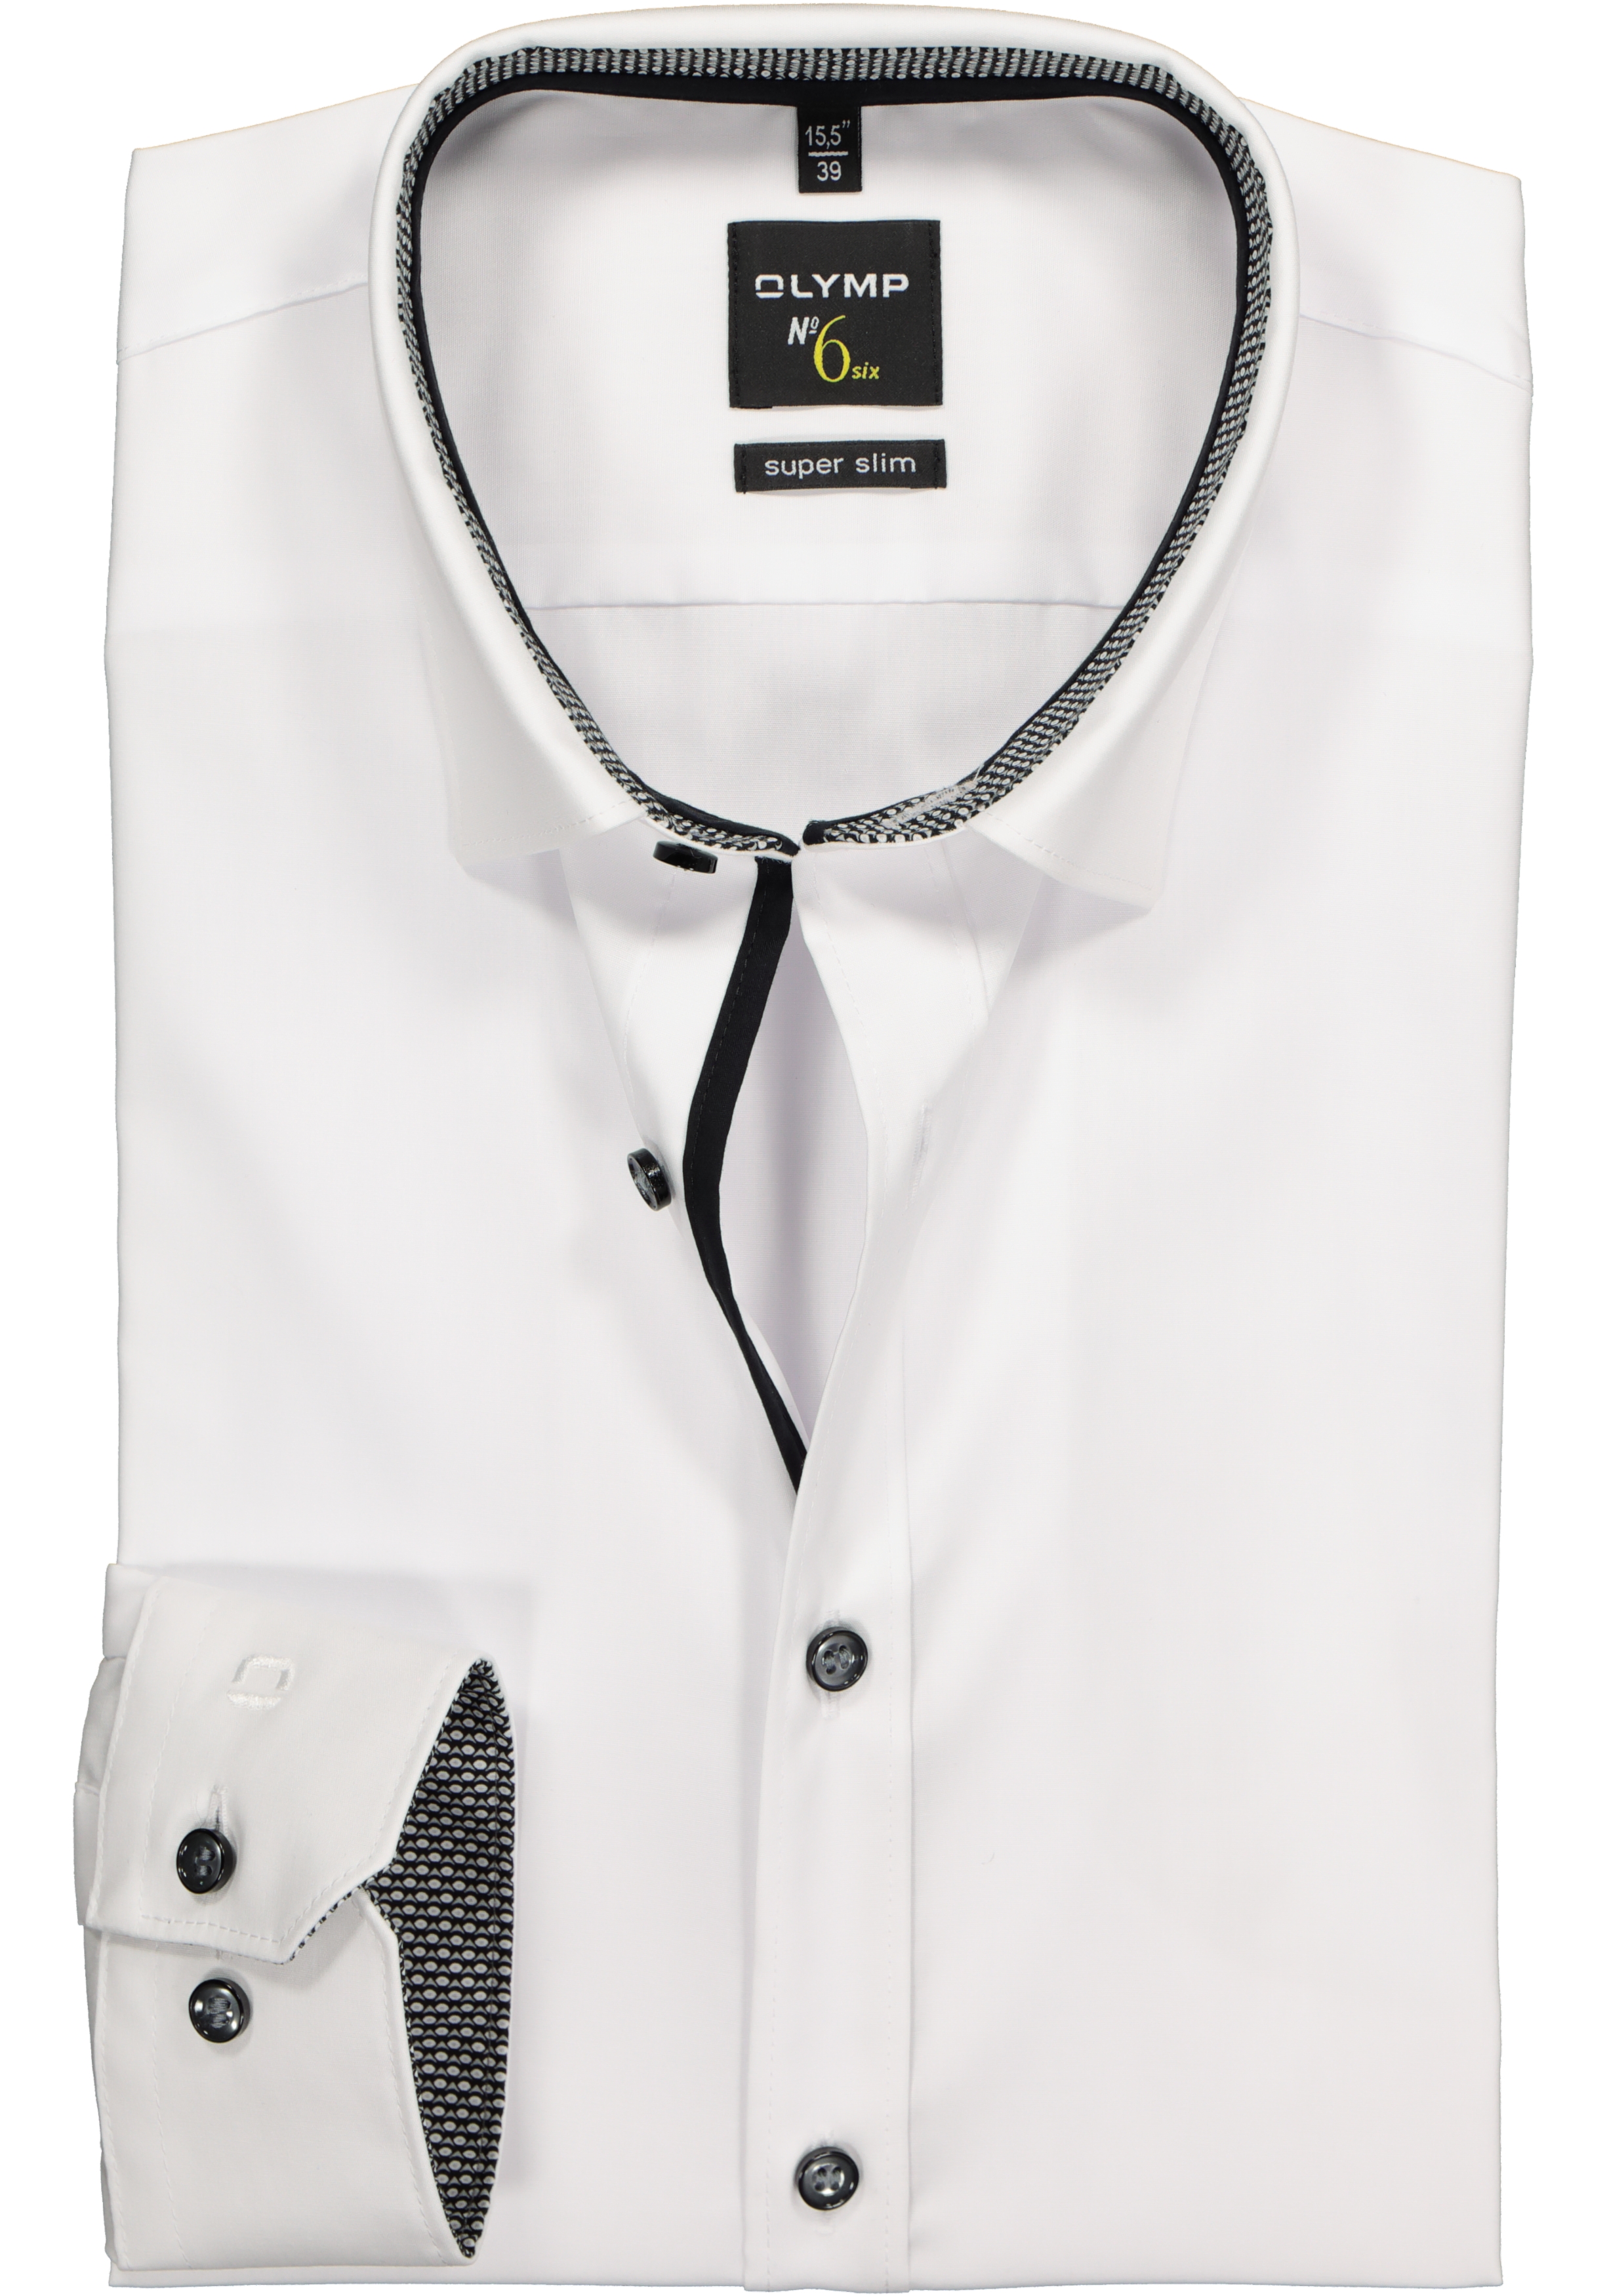 Verdachte sla Trend OLYMP No. Six super slim fit overhemd, wit (zwart contrast) - Shop de  nieuwste voorjaarsmode